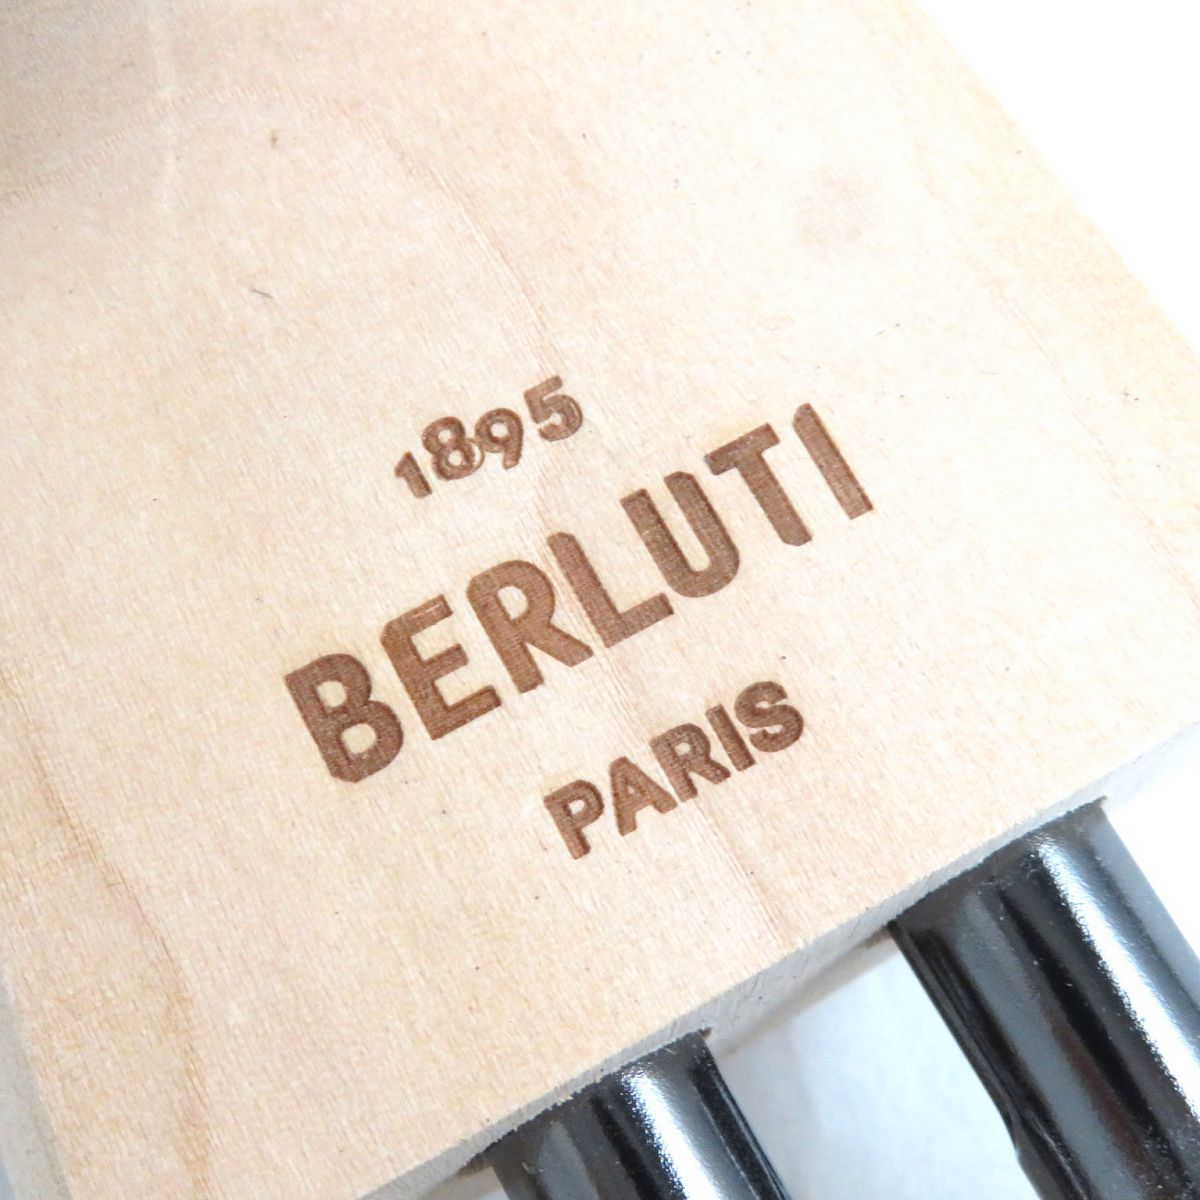  превосходный товар ^BERLUTI Berluti новый с логотипом из дерева дерево колодка tree / обувные колодки натуральный 6 Франция производства мужской рекомендация *